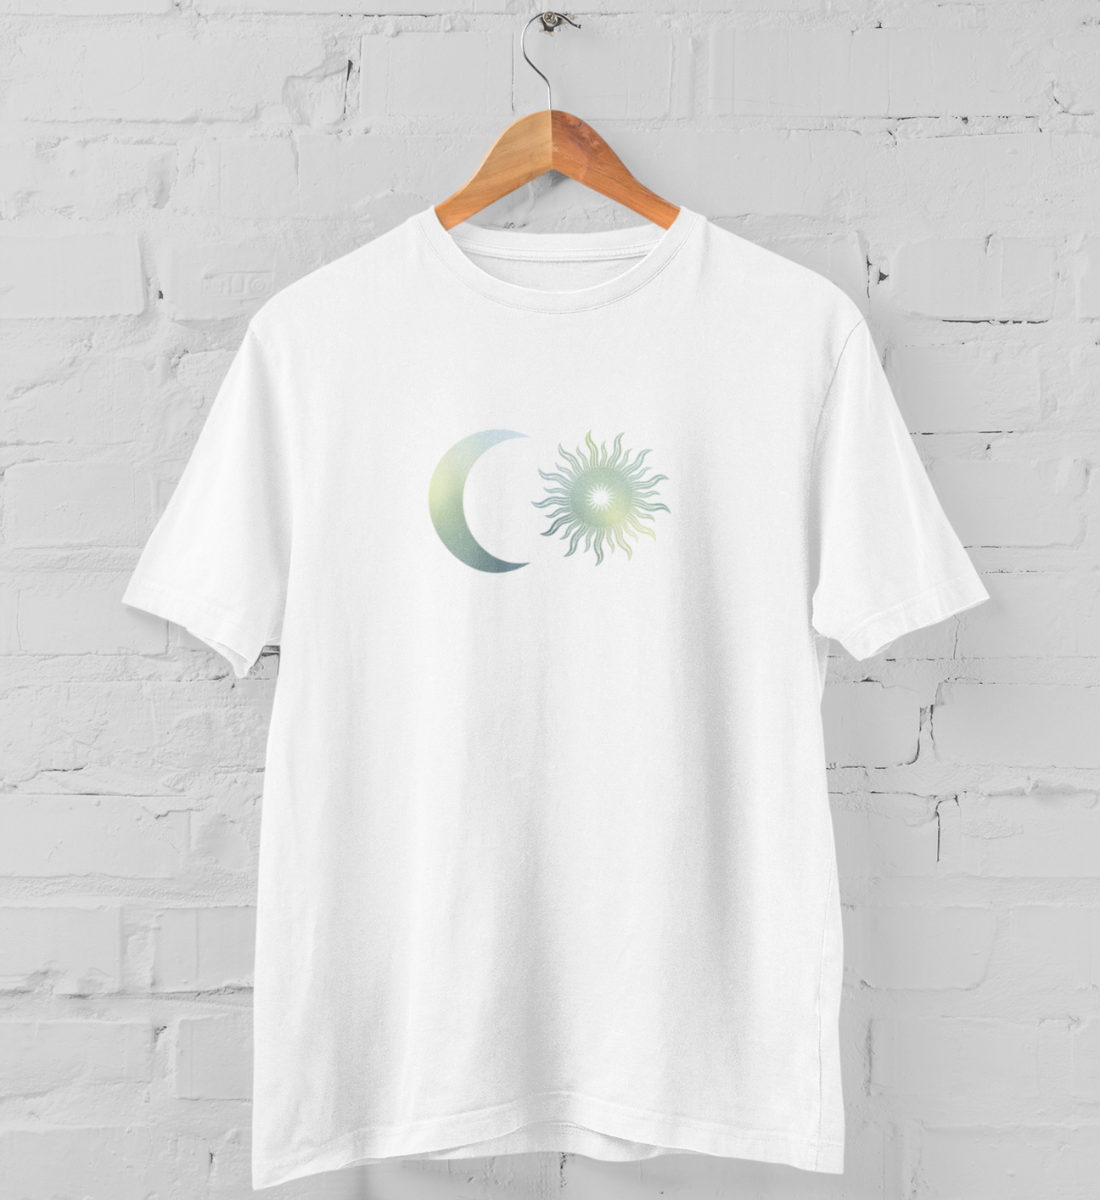 sonne + mond l yoga t-shirt weiß l nachhaltiges t-shirt l yoga kleidung bio-baumwolle l ethischer konsum dank nachhaltiger produktion